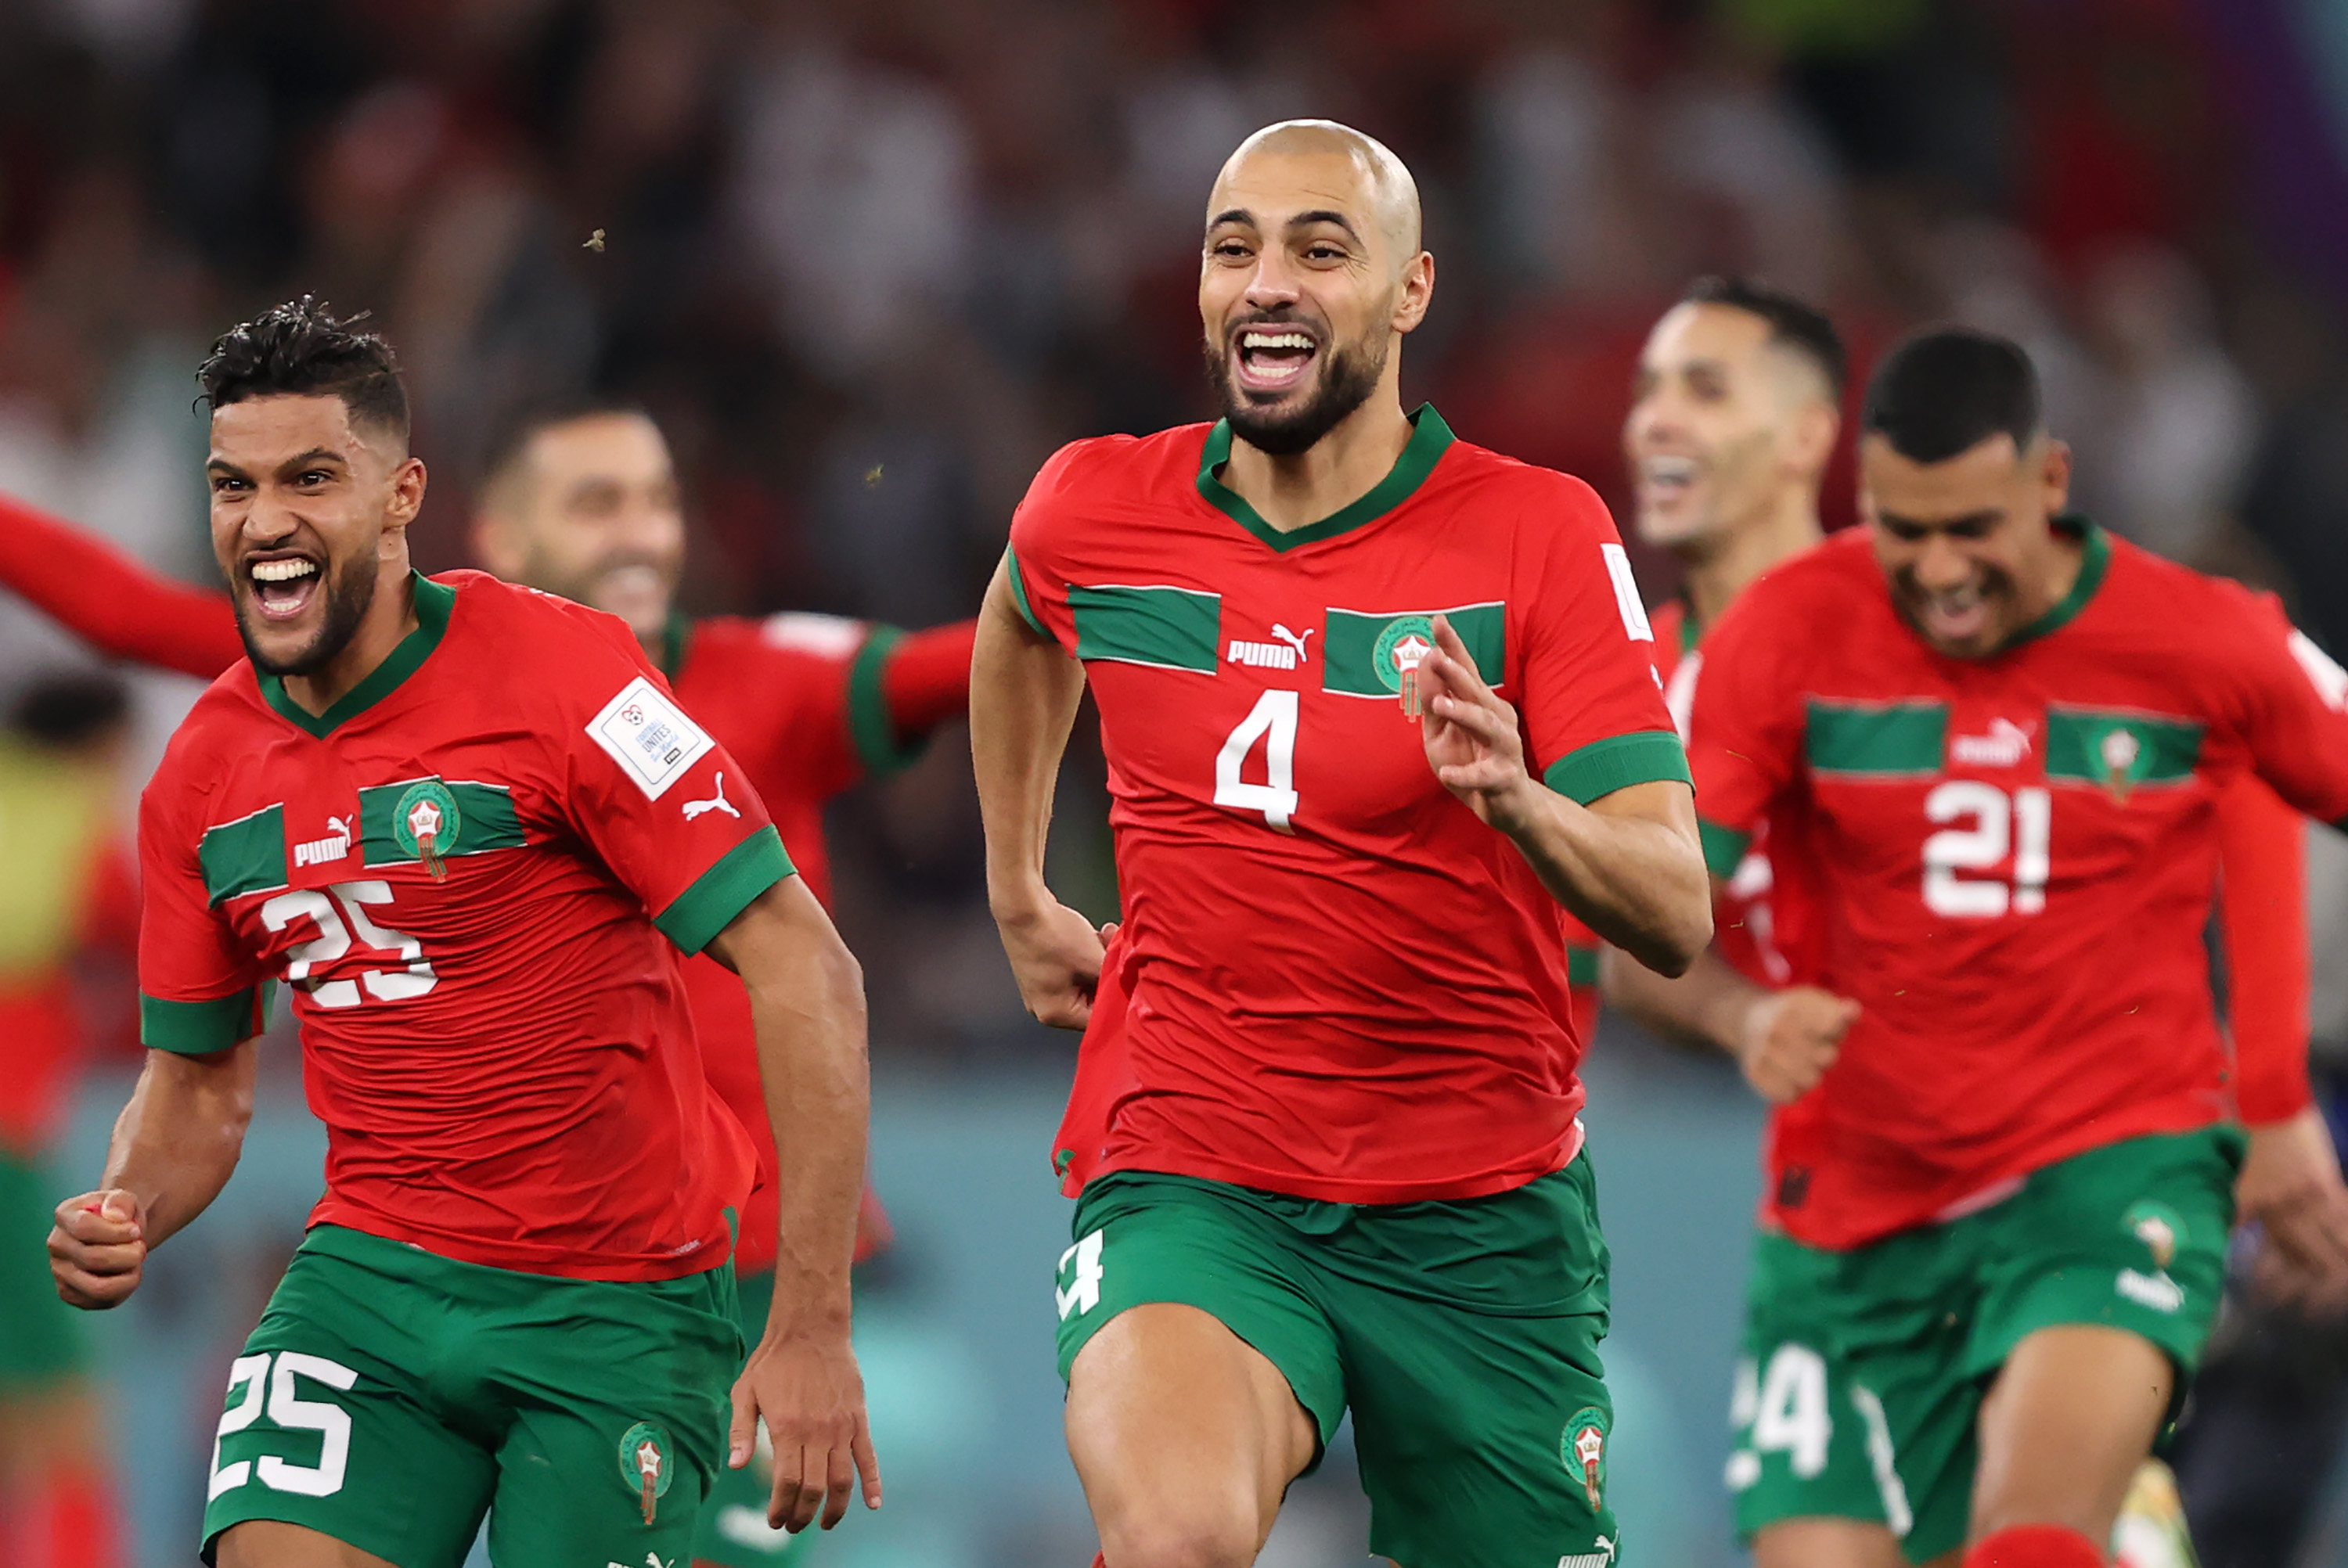 Der Mittelfeldspieler spielte eine Hauptrolle bei Marokkos glänzendem Einzug ins Halbfinale